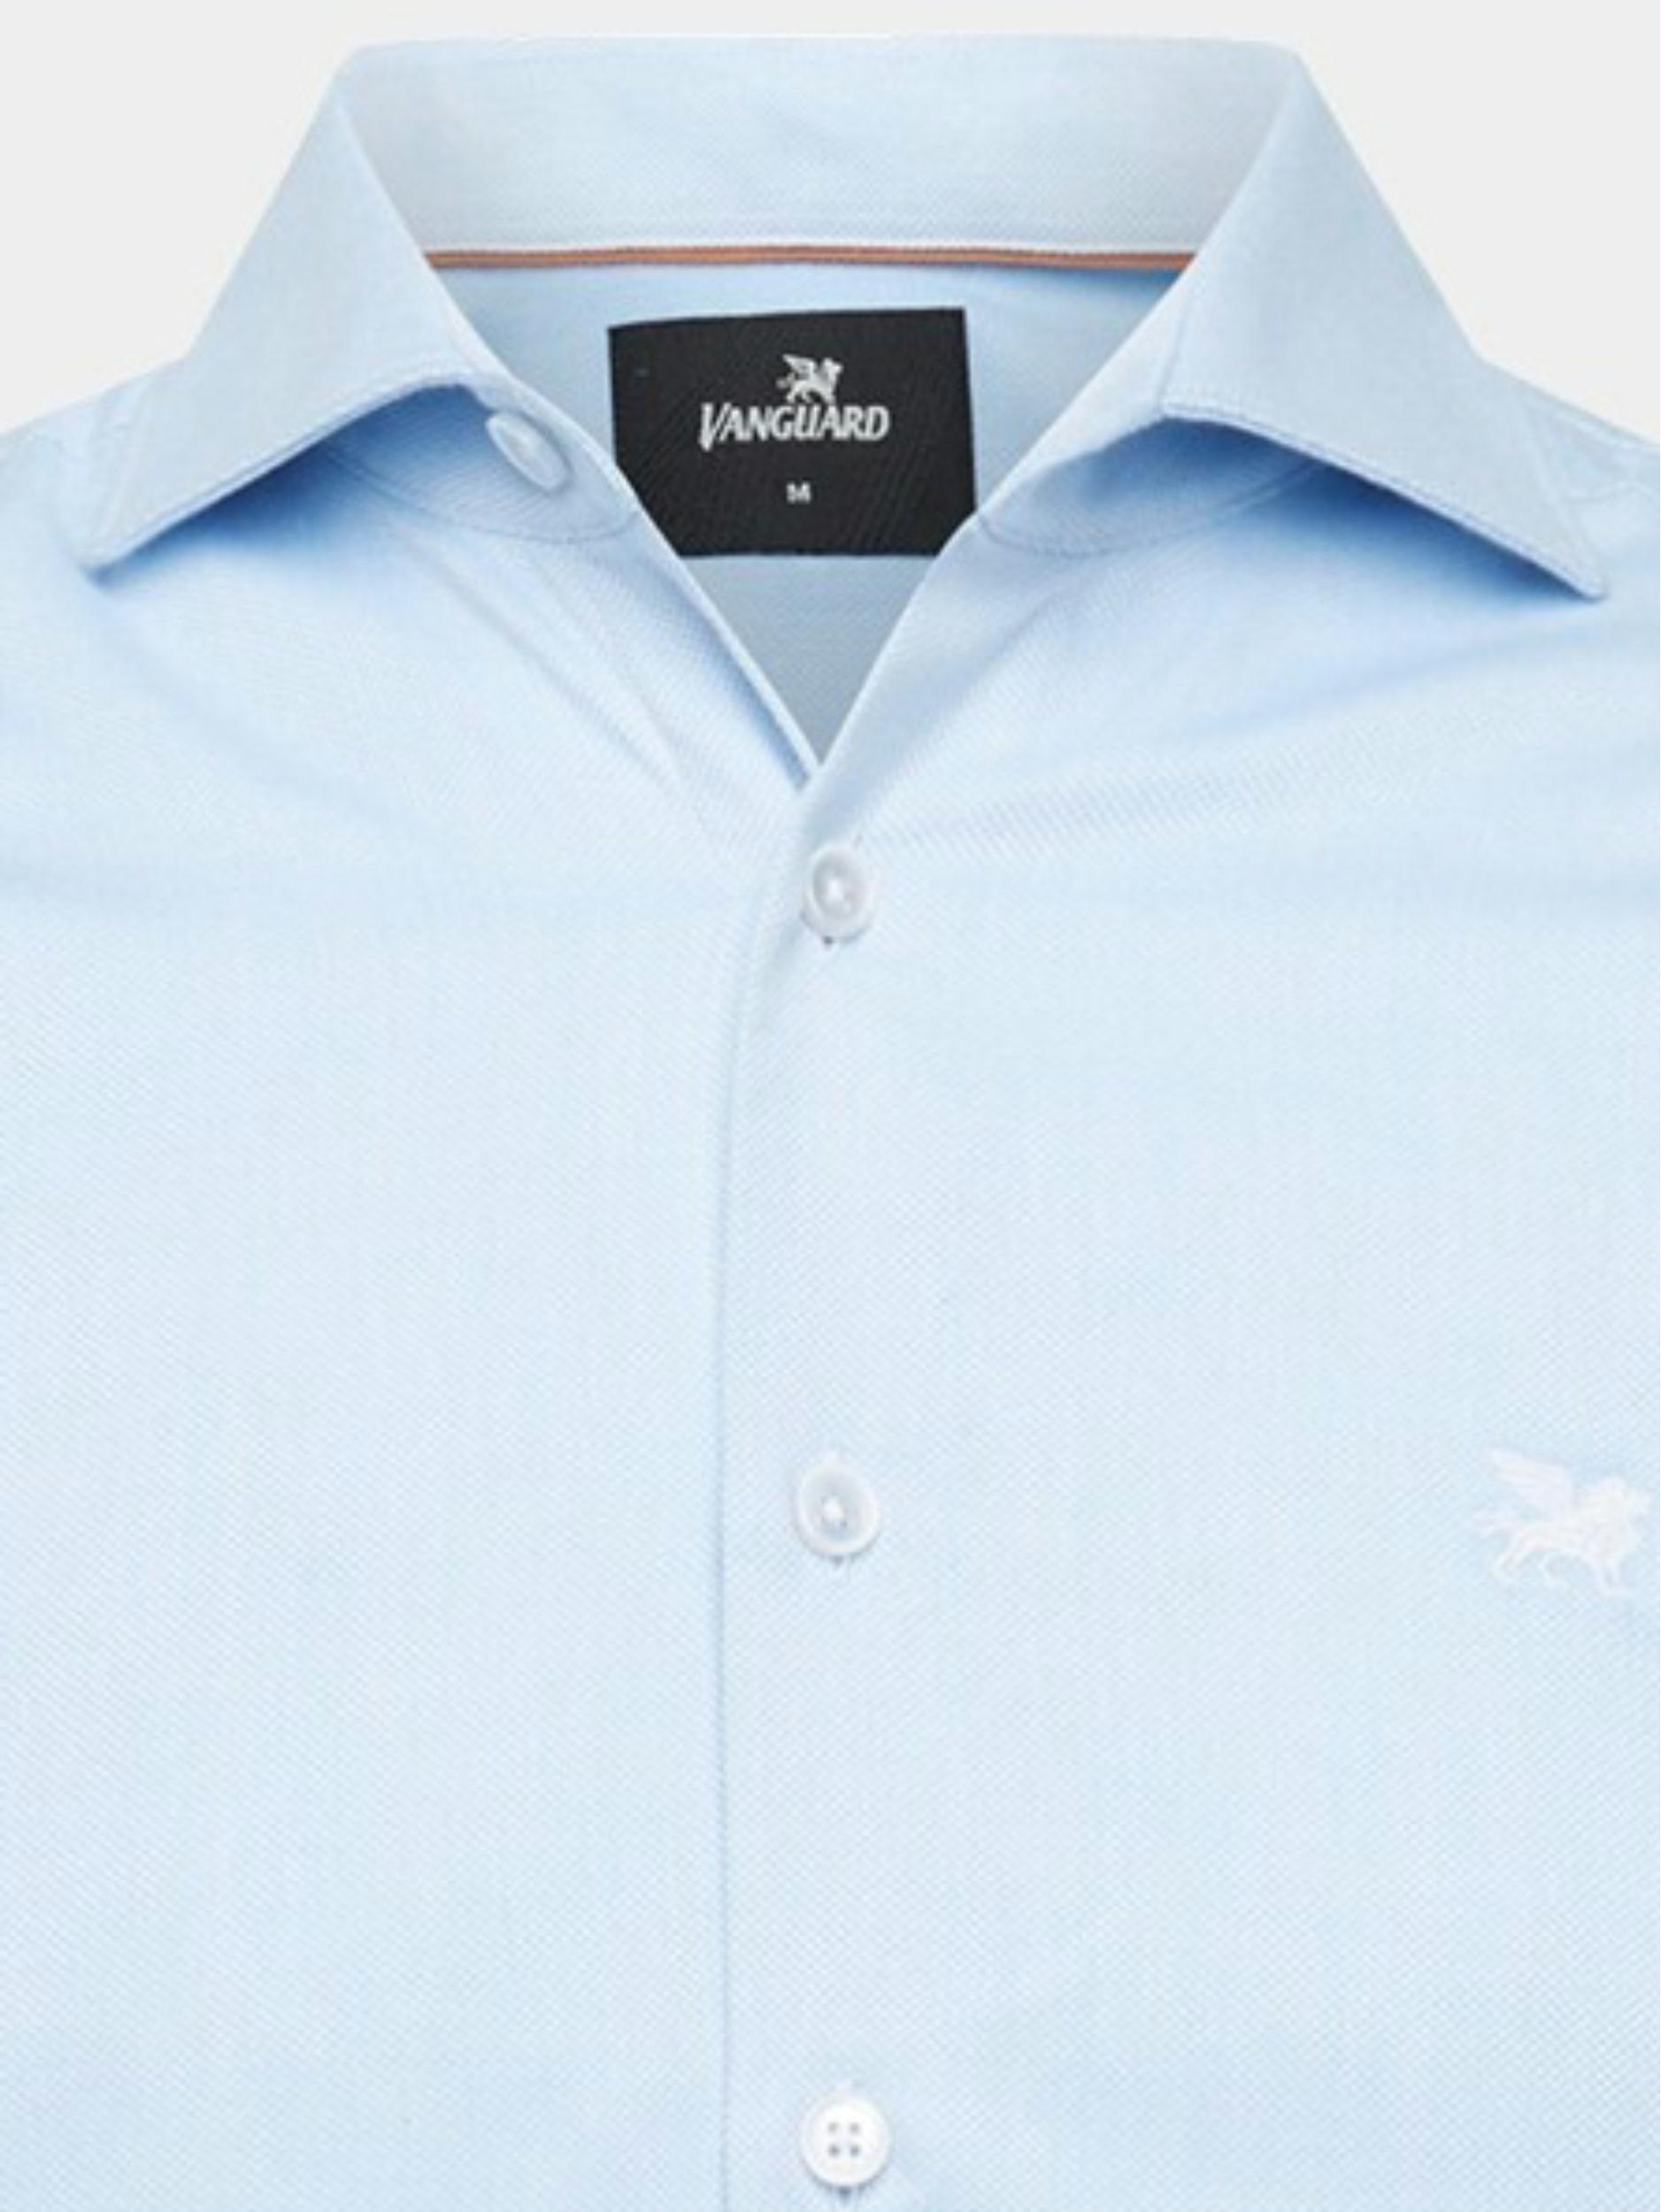 Vanguard Casual hemd lange mouw Blauw Long Sleeve Shirt Power stret VSI2302204/5401